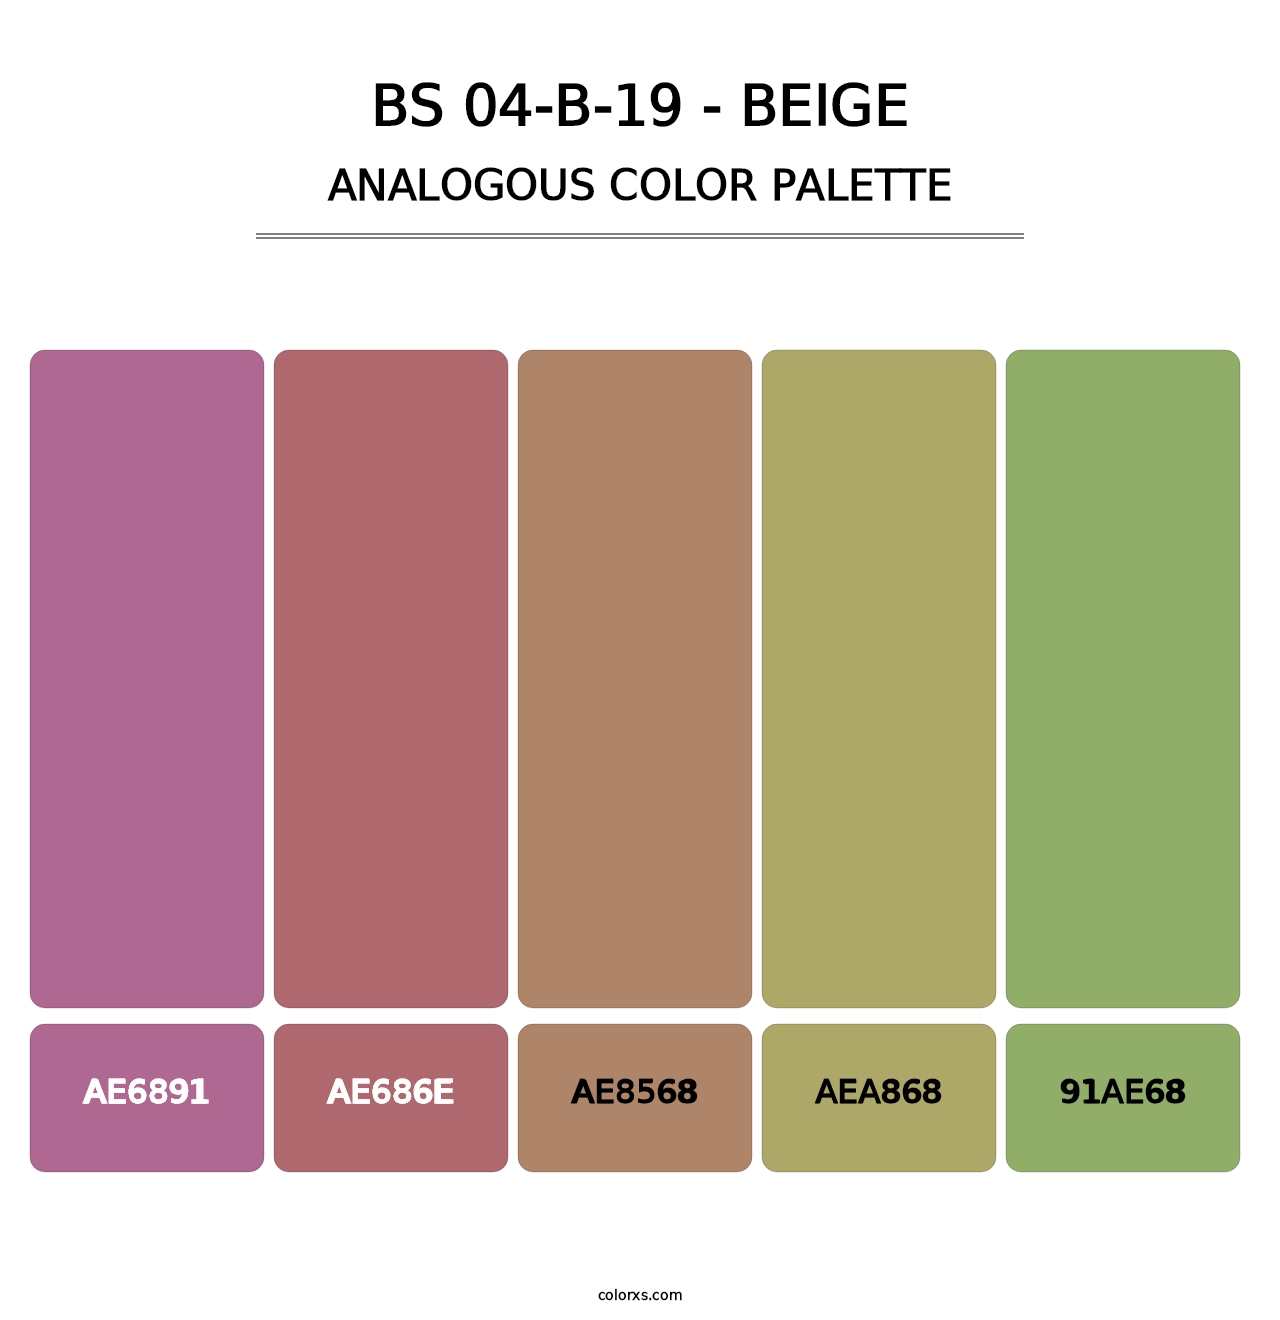 BS 04-B-19 - Beige - Analogous Color Palette